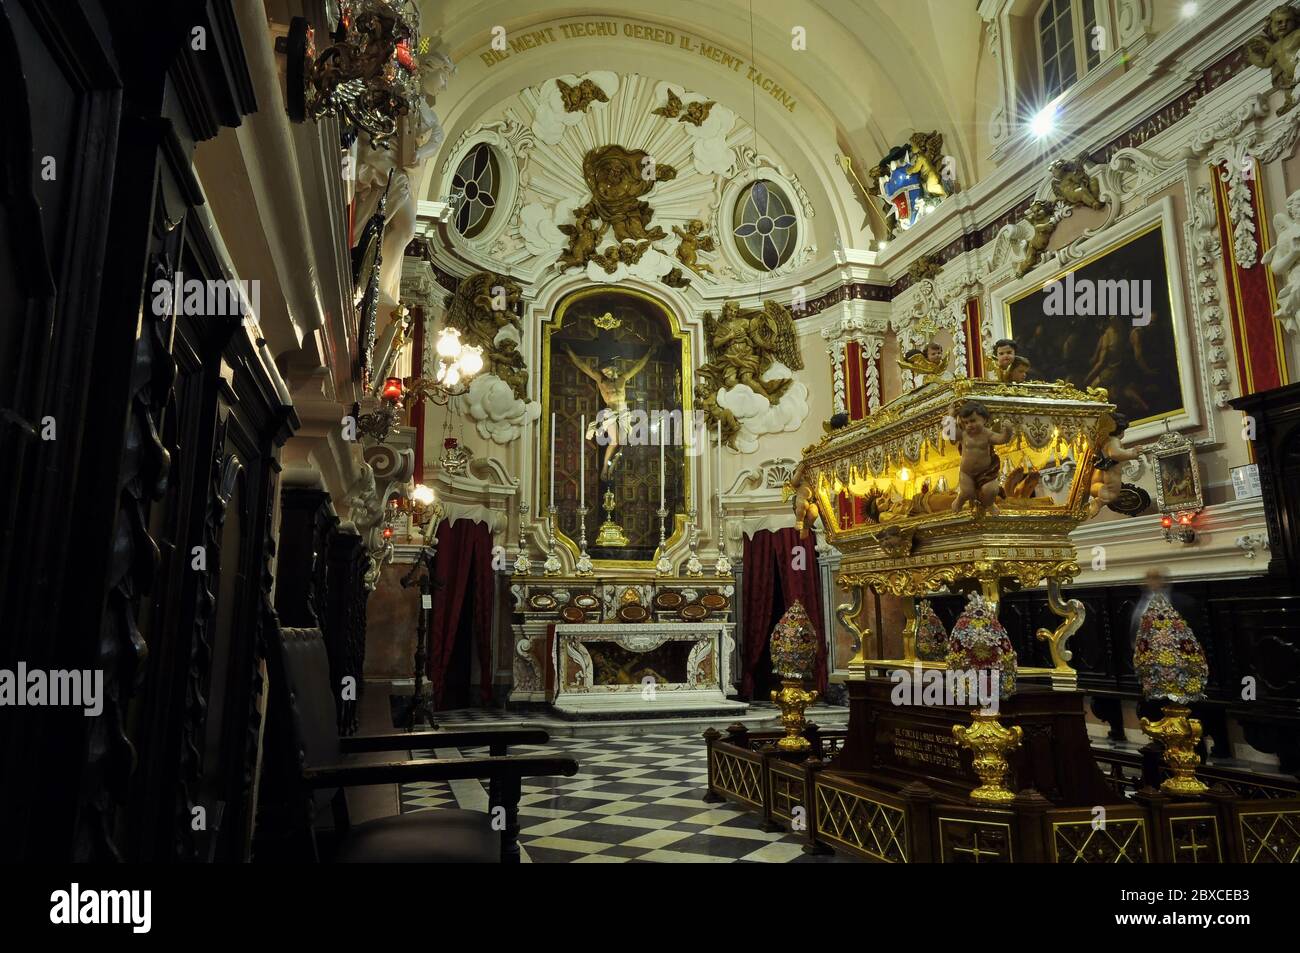 El interior de la capilla lateral de la iglesia barroca, con la tumba simbólica iluminada de Jesucristo en el centro-derecha. Foto de stock